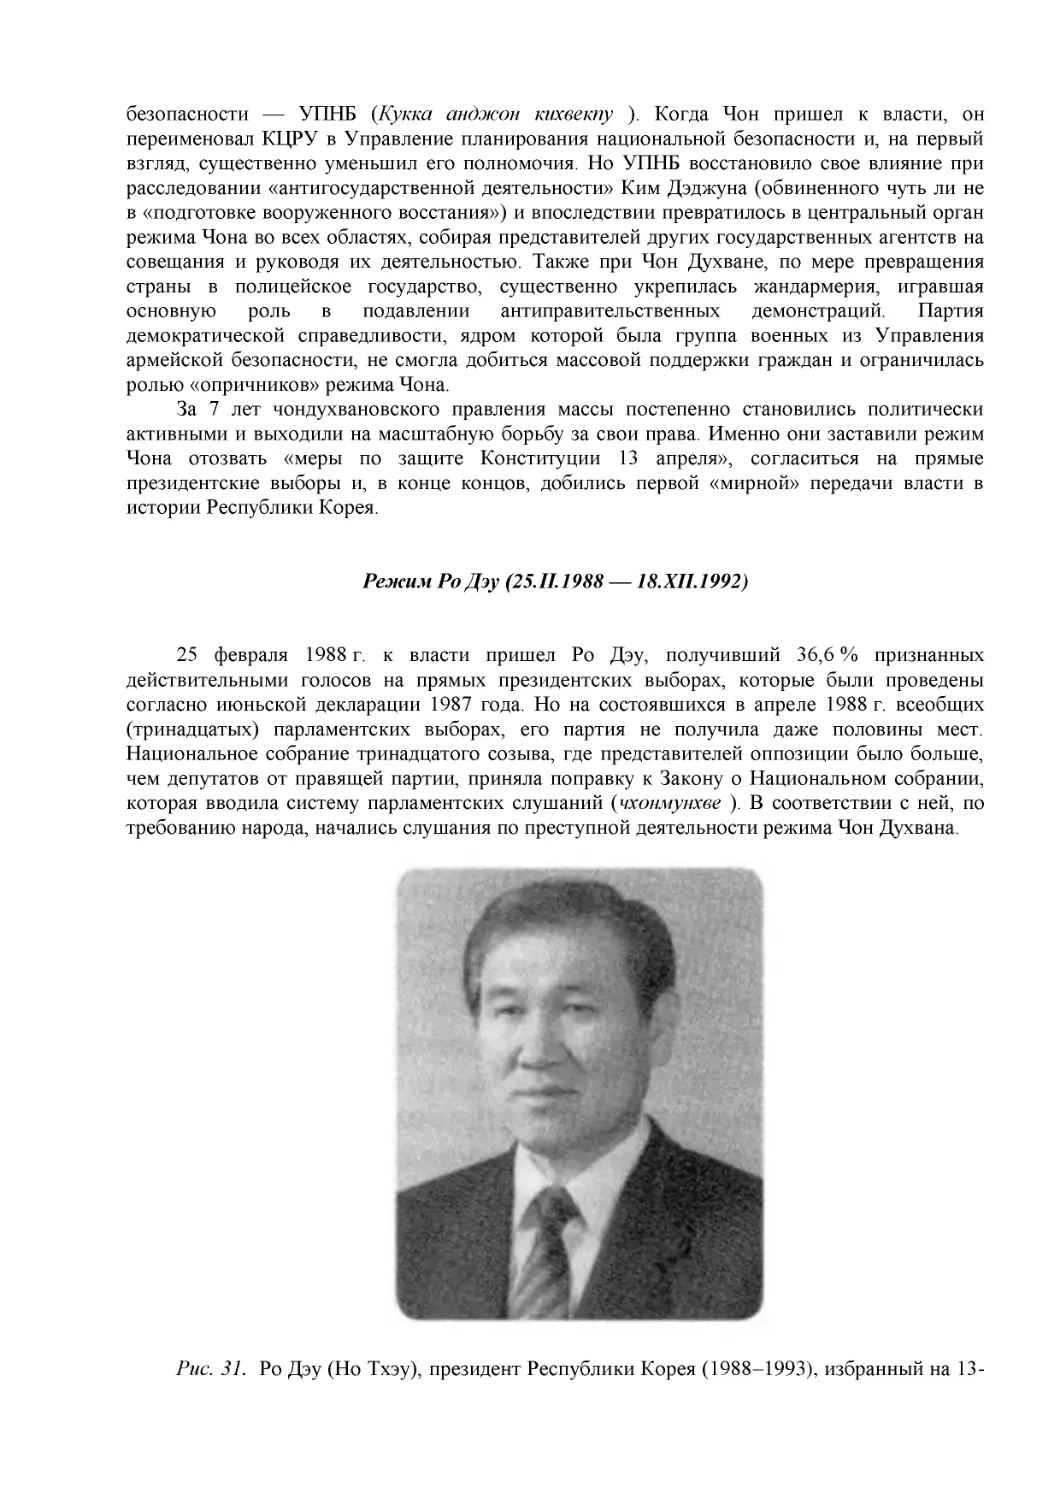 Режим Ро Дэу (25.II.1988 — 18.XII.1992)